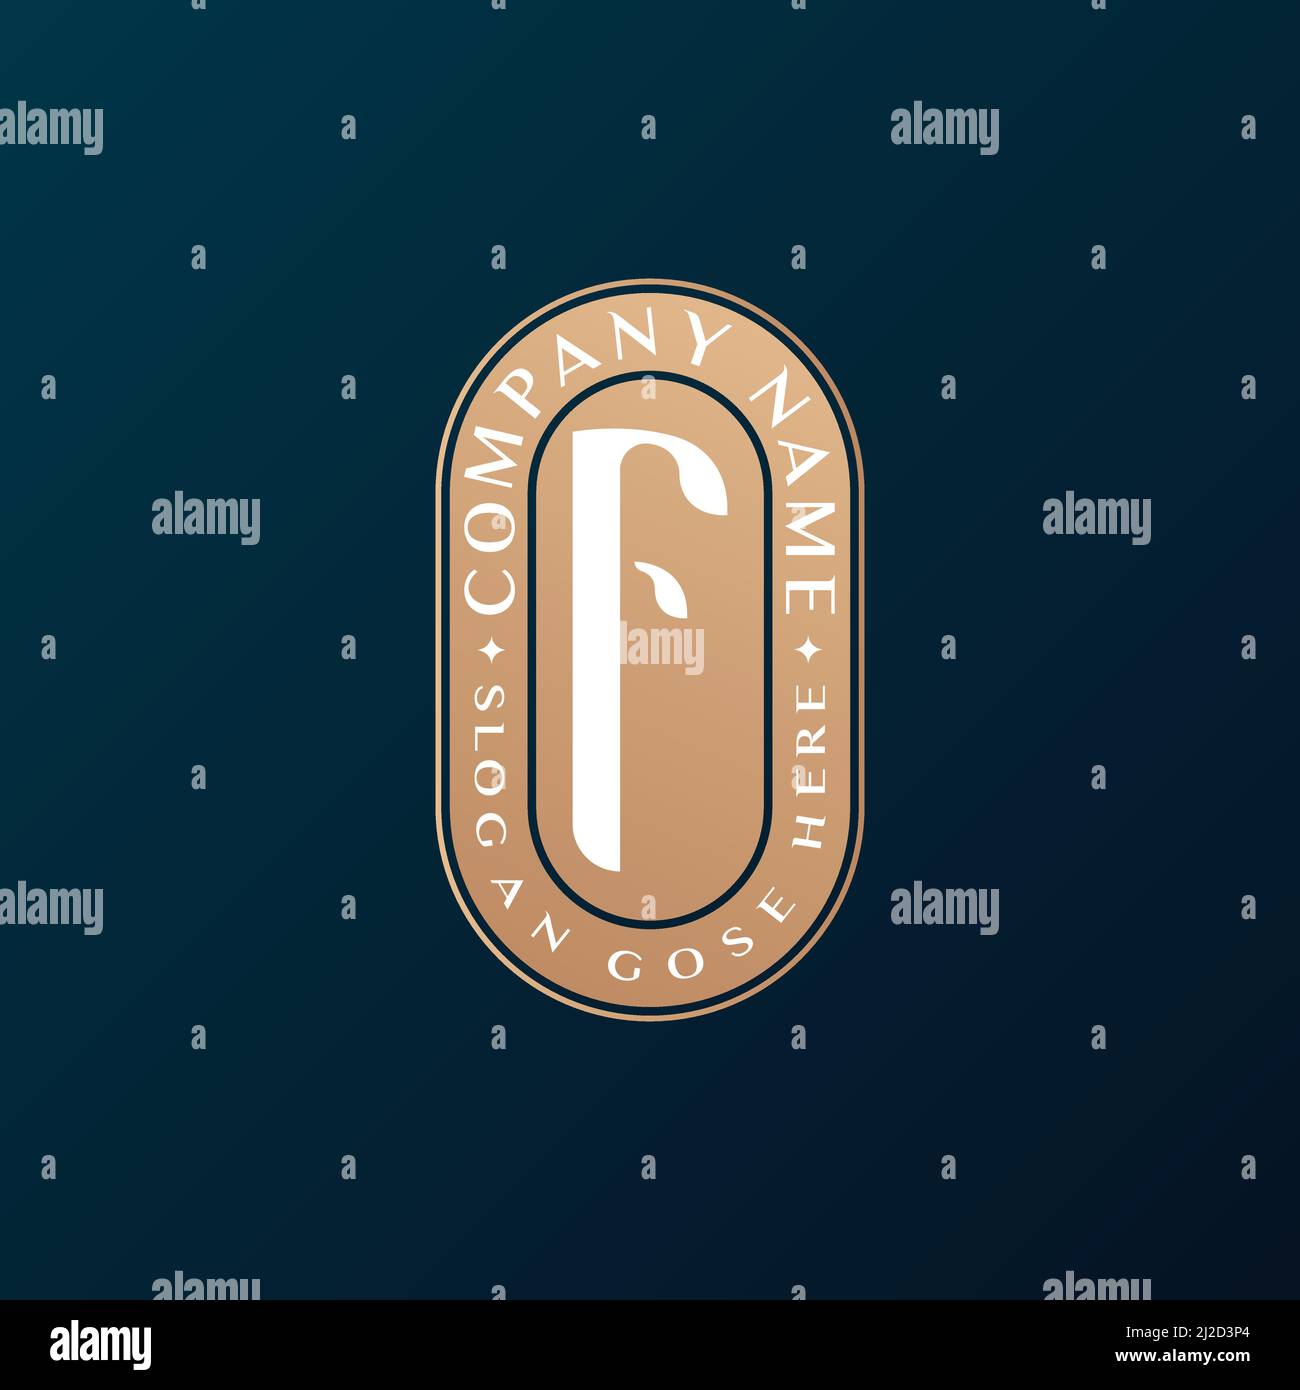 Abstrait Emblem Premium luxe identité d'entreprise élégant lettre F logo design Illustration de Vecteur